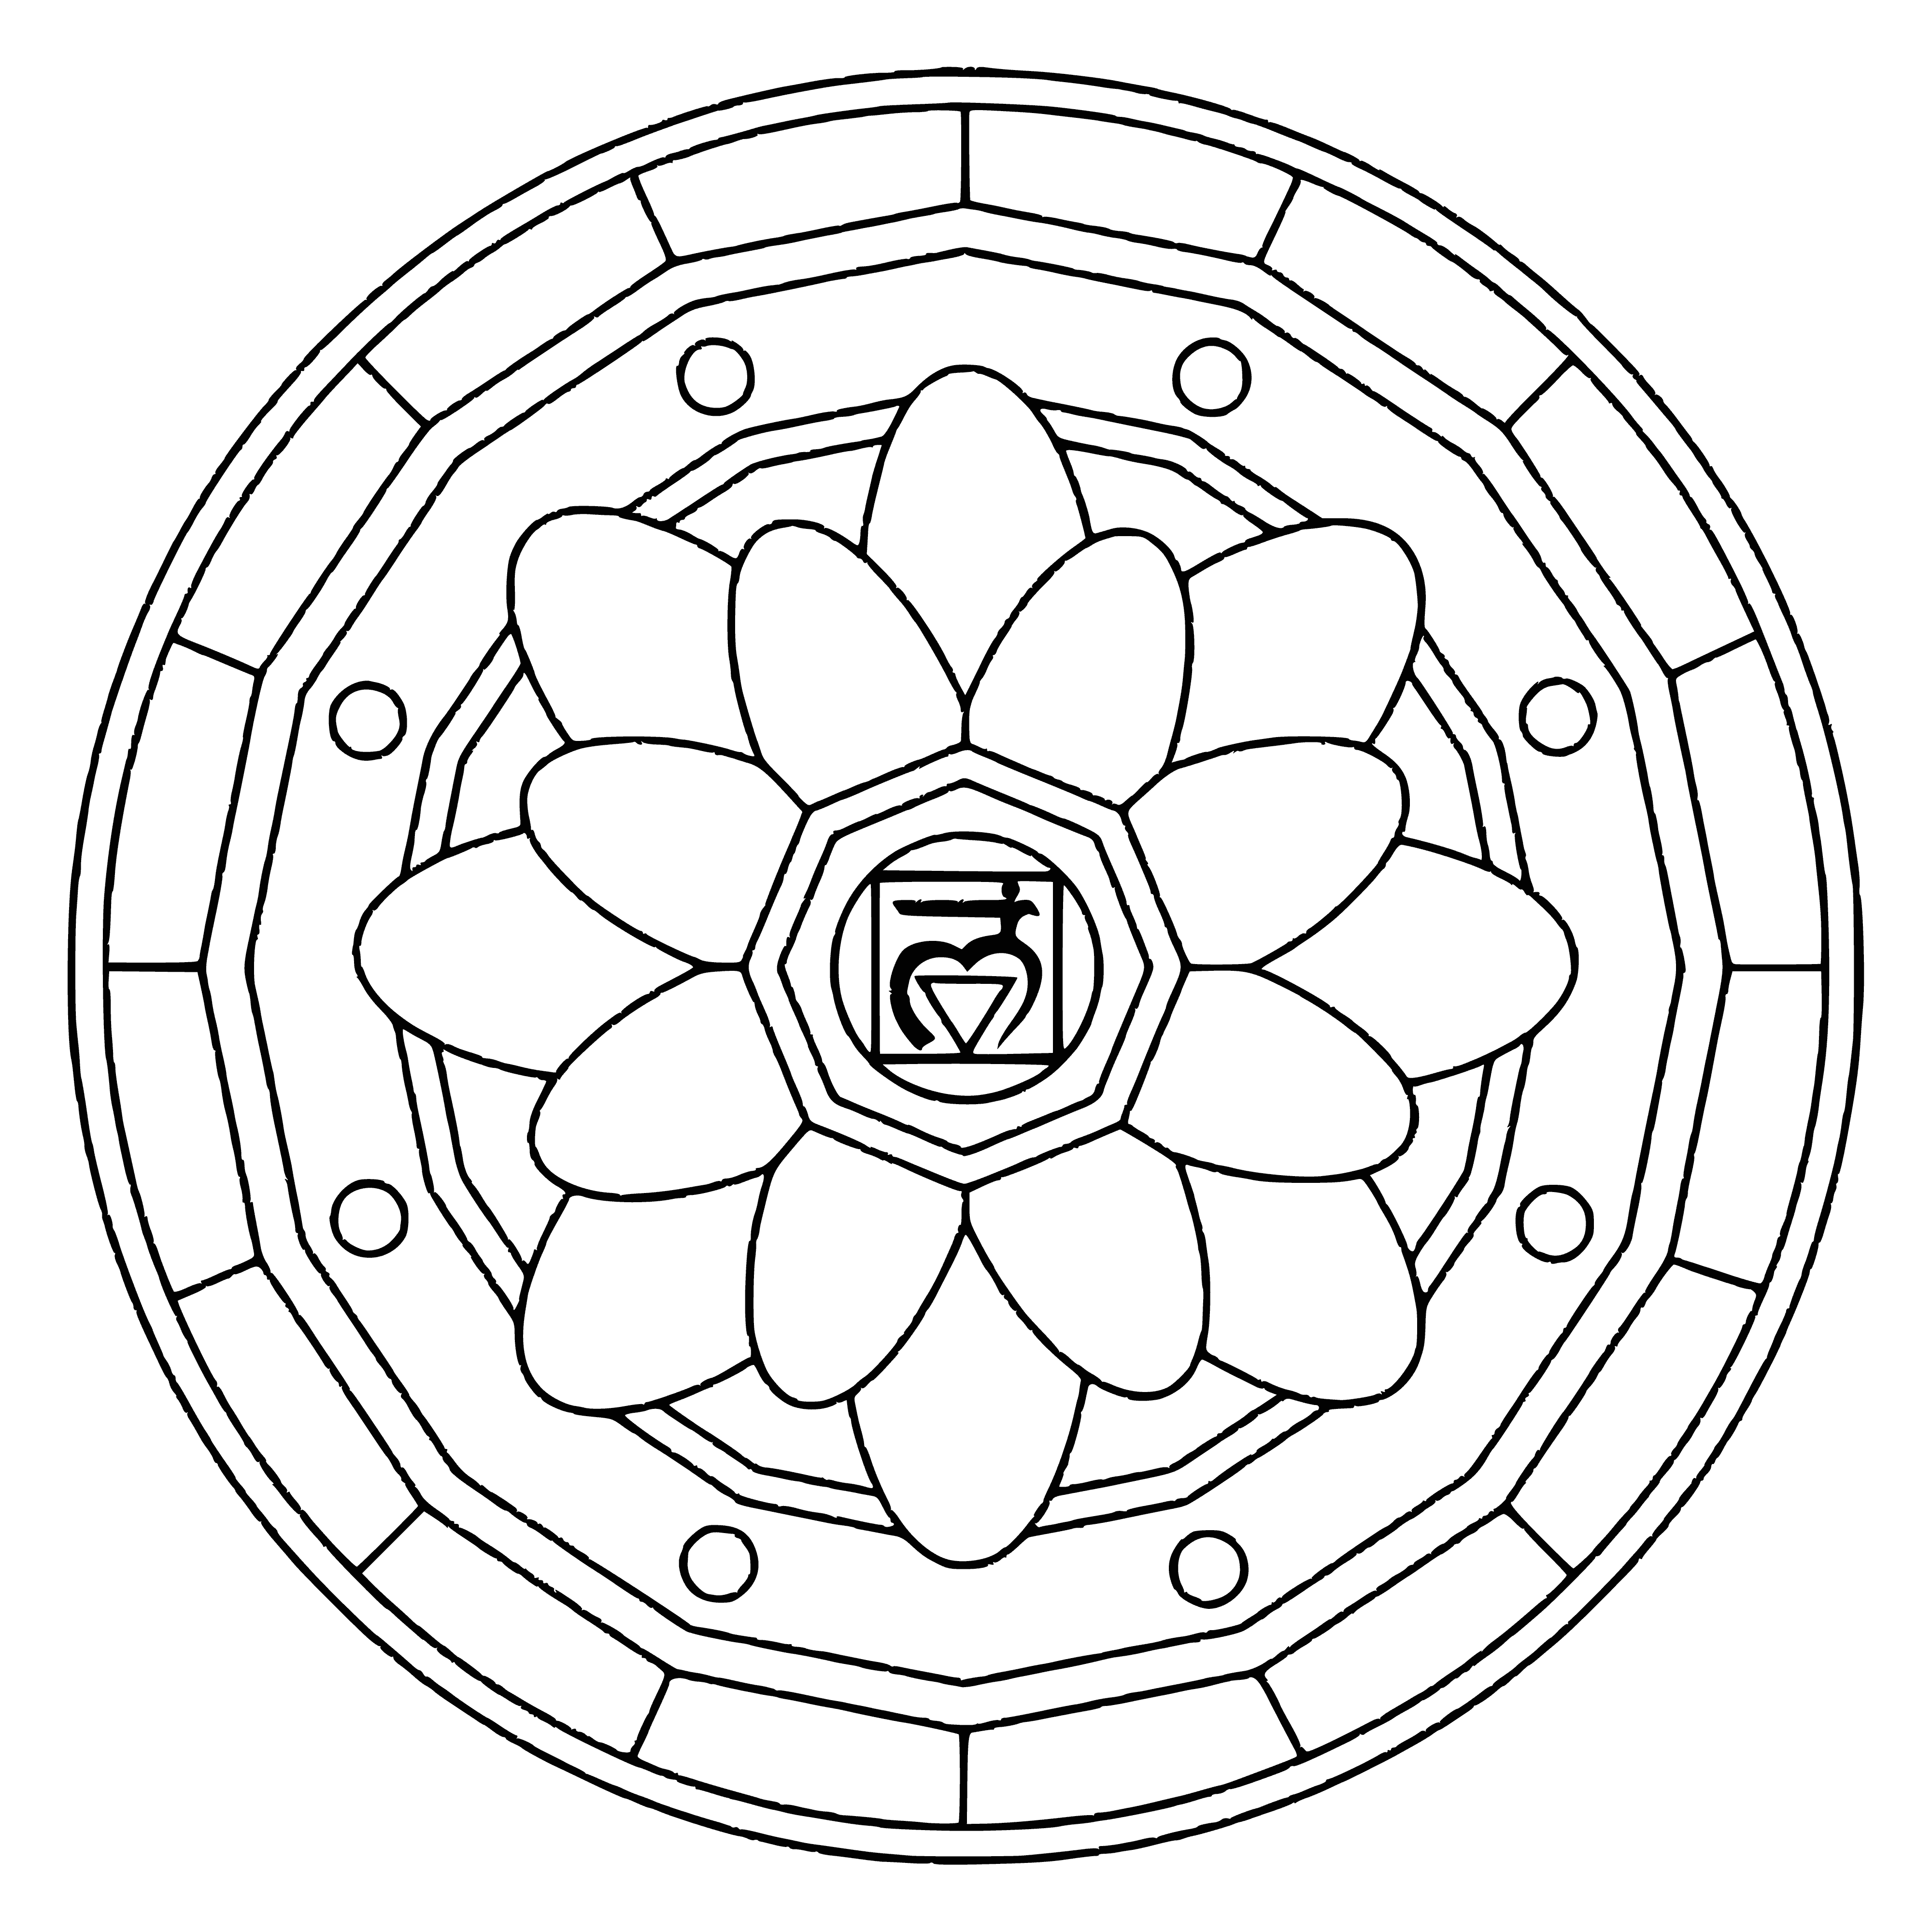 Mandala with the symbol of Muladhara coloring page